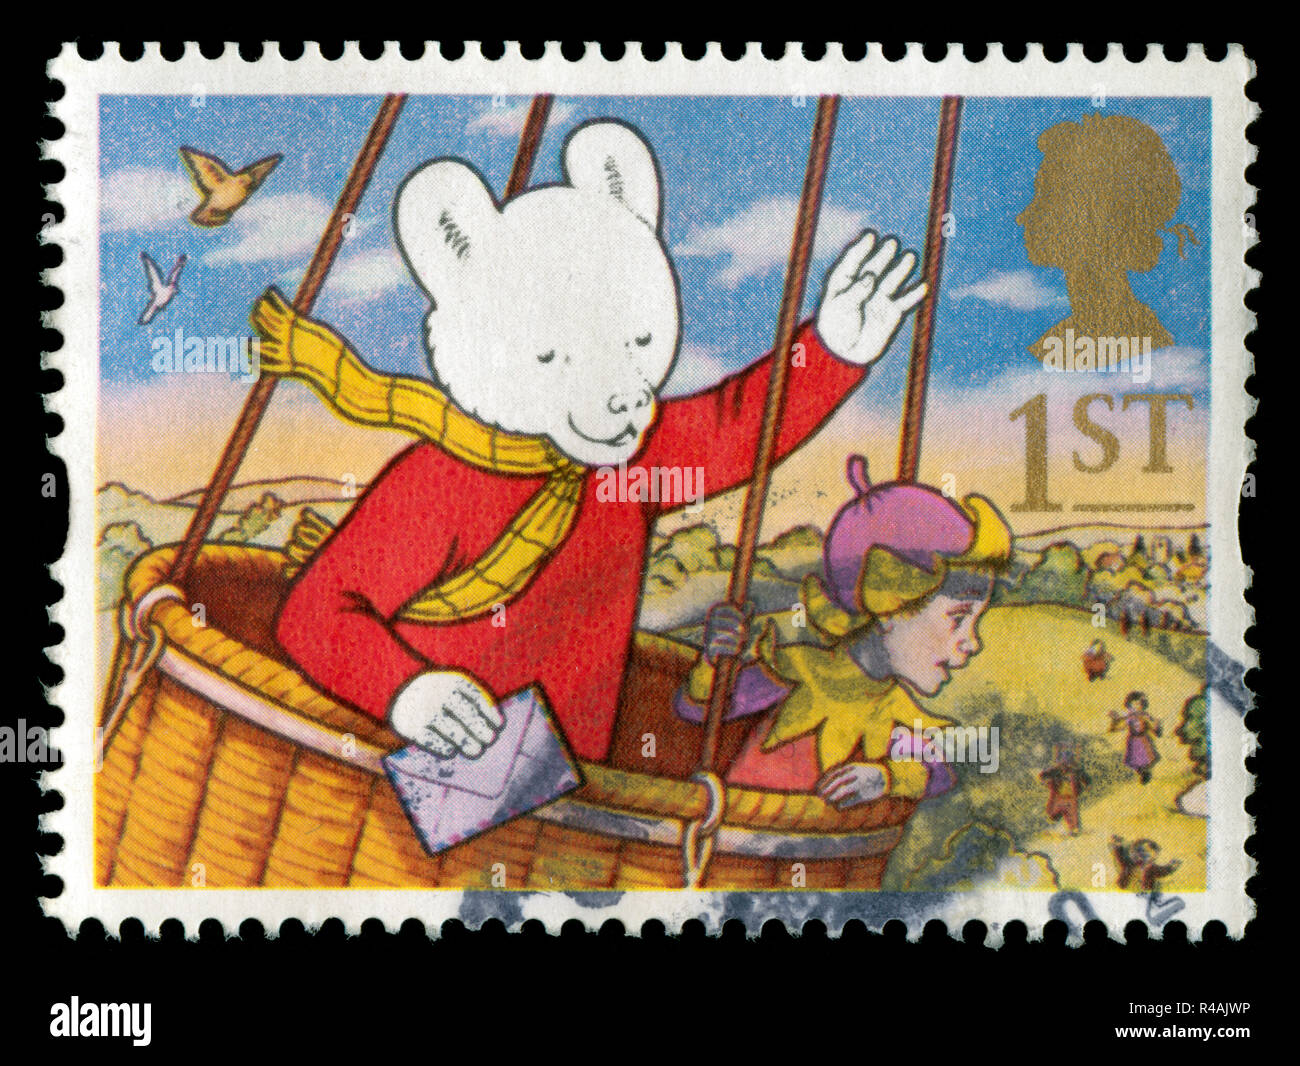 Timbre-poste du Royaume-Uni et l'Irlande du Nord dans les salutations Stamps 1994 - série de messages Banque D'Images